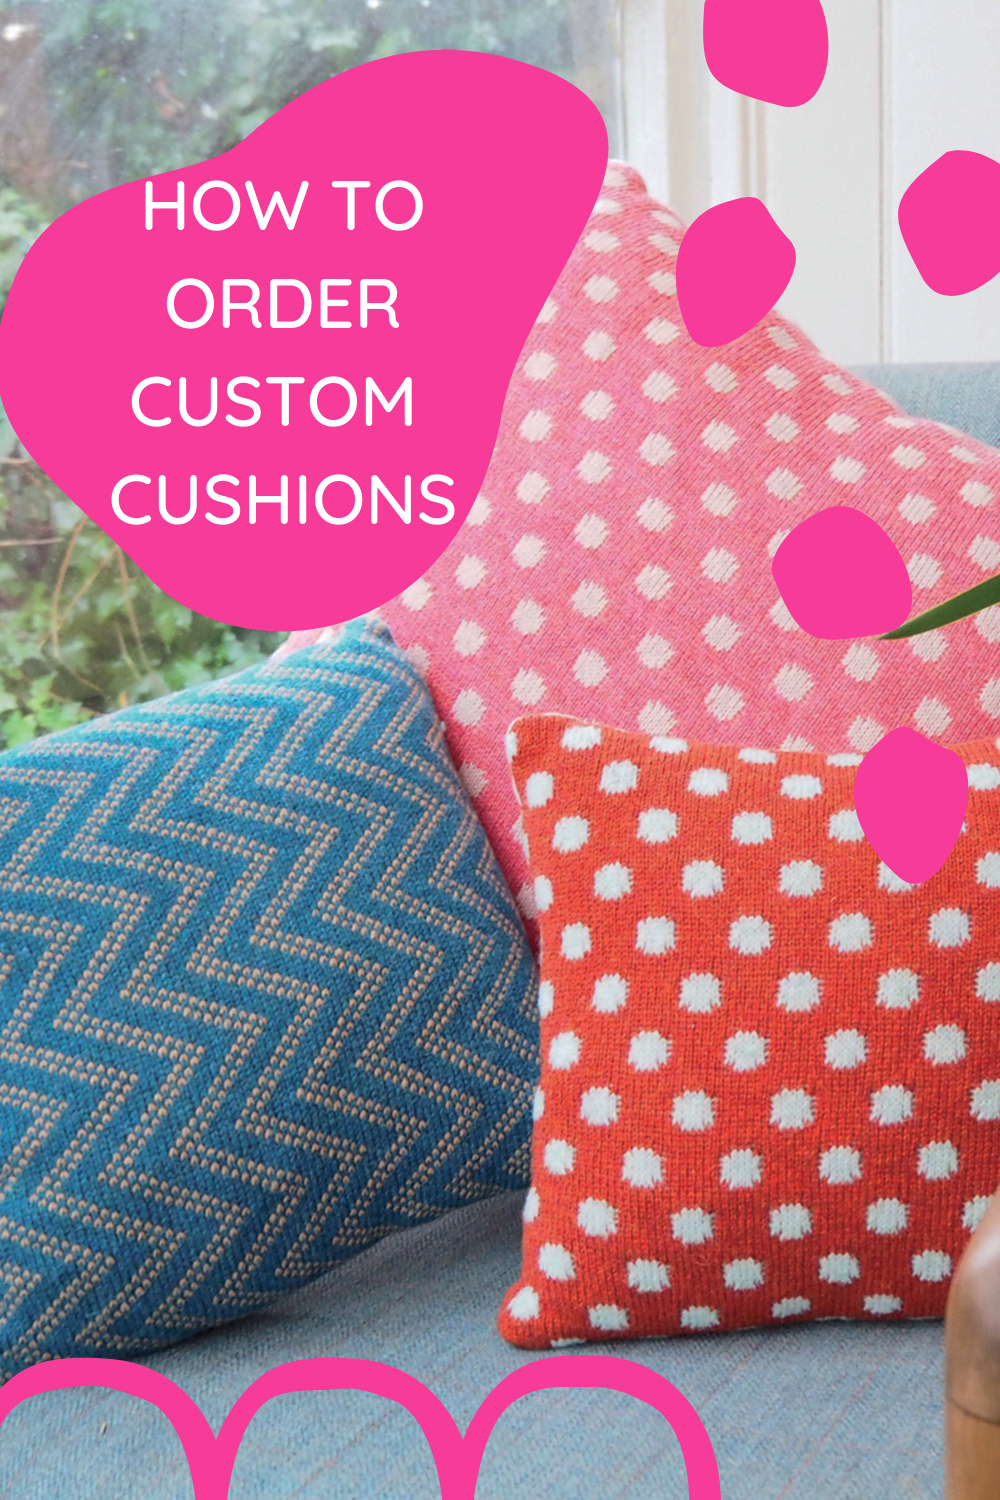 How to Order Custom Cushions